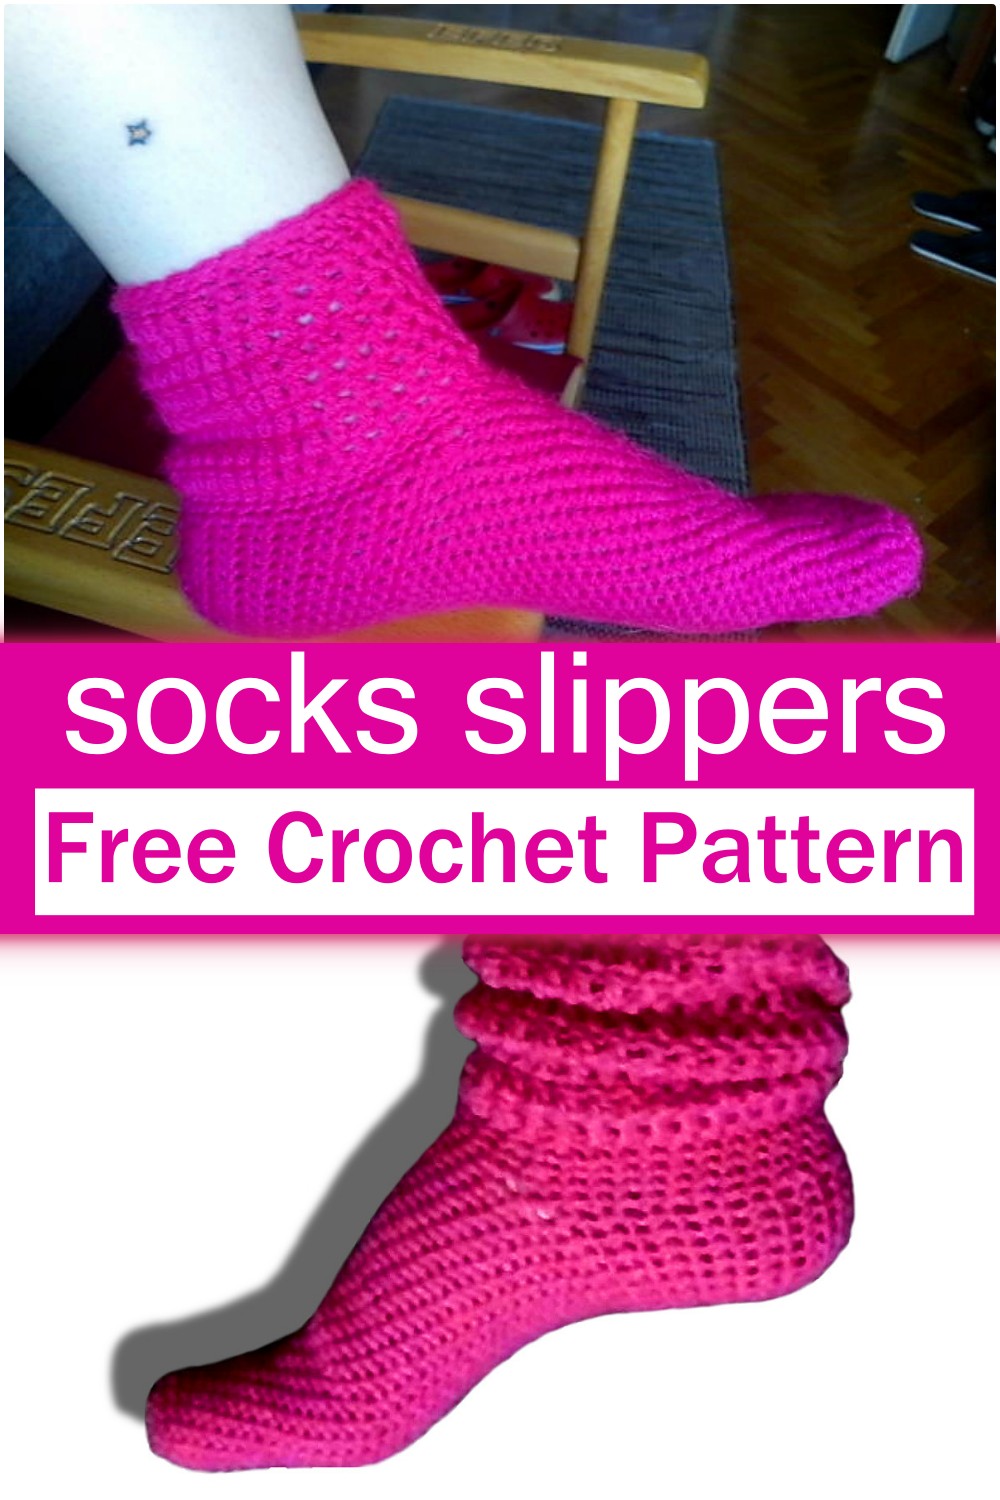 Crochet socks slippers